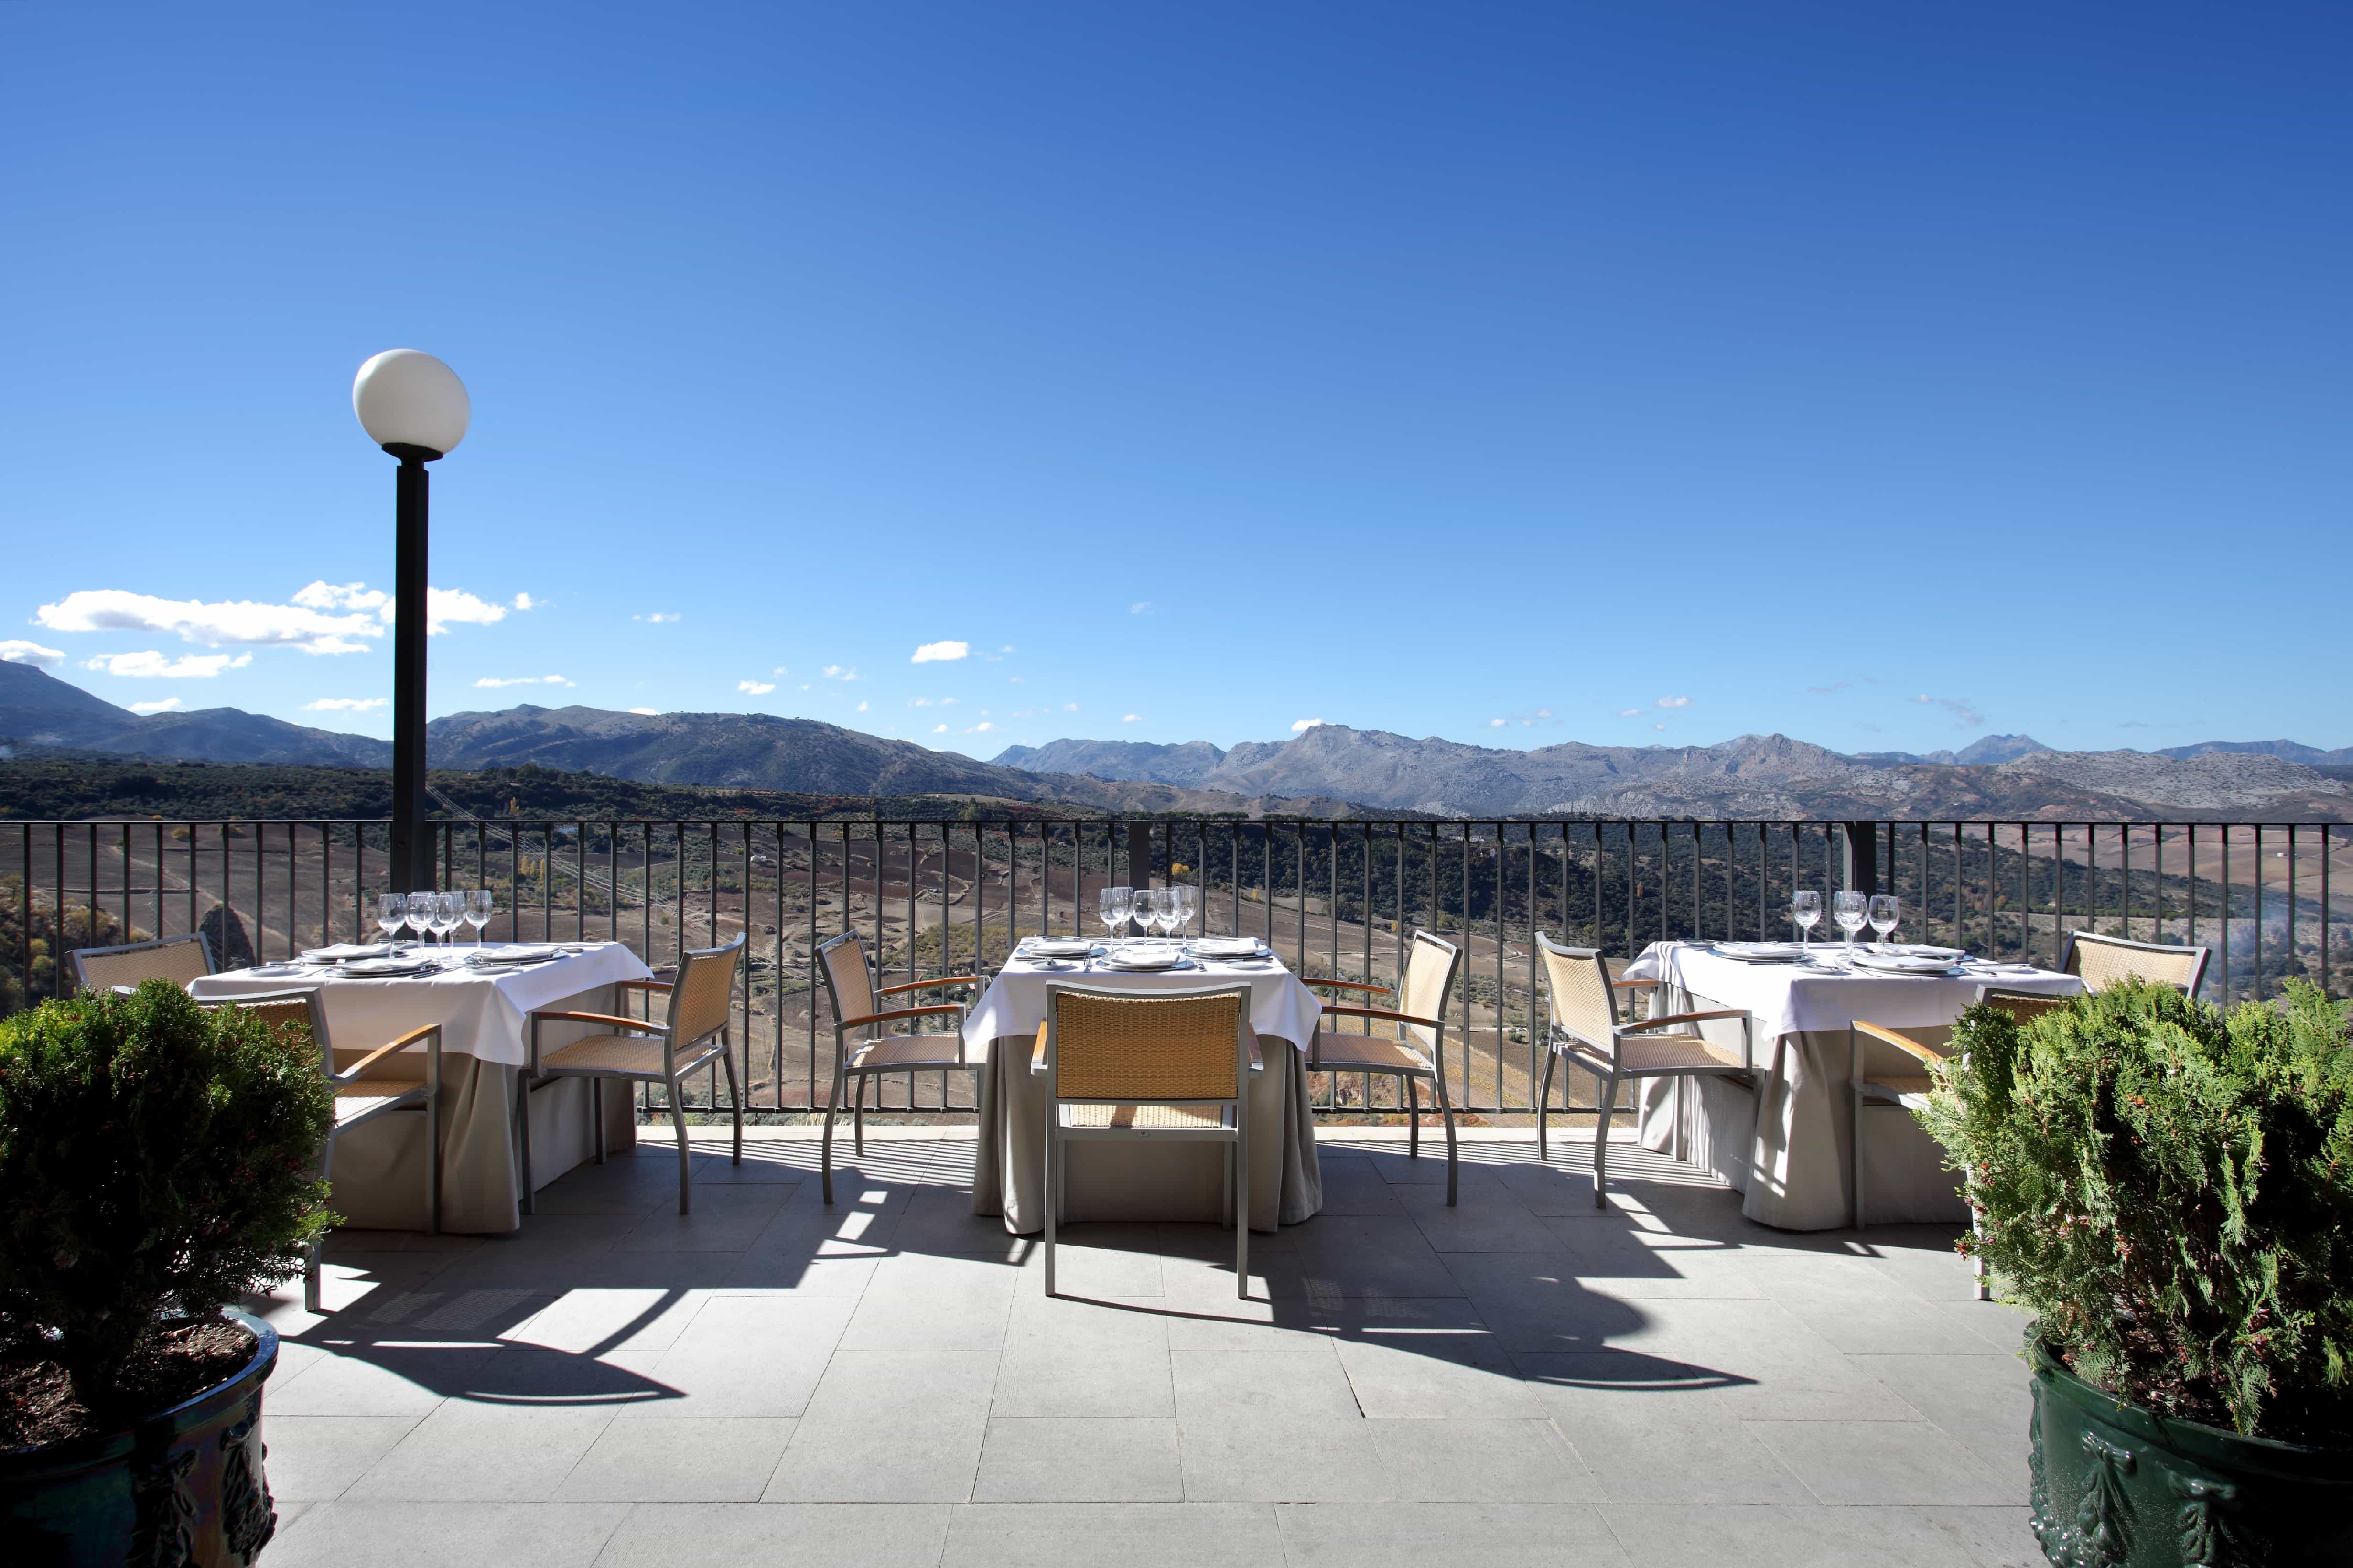 Terraza exterior del Restaurante del Parador de Ronda con el cielo despejado y las montañas al fondo